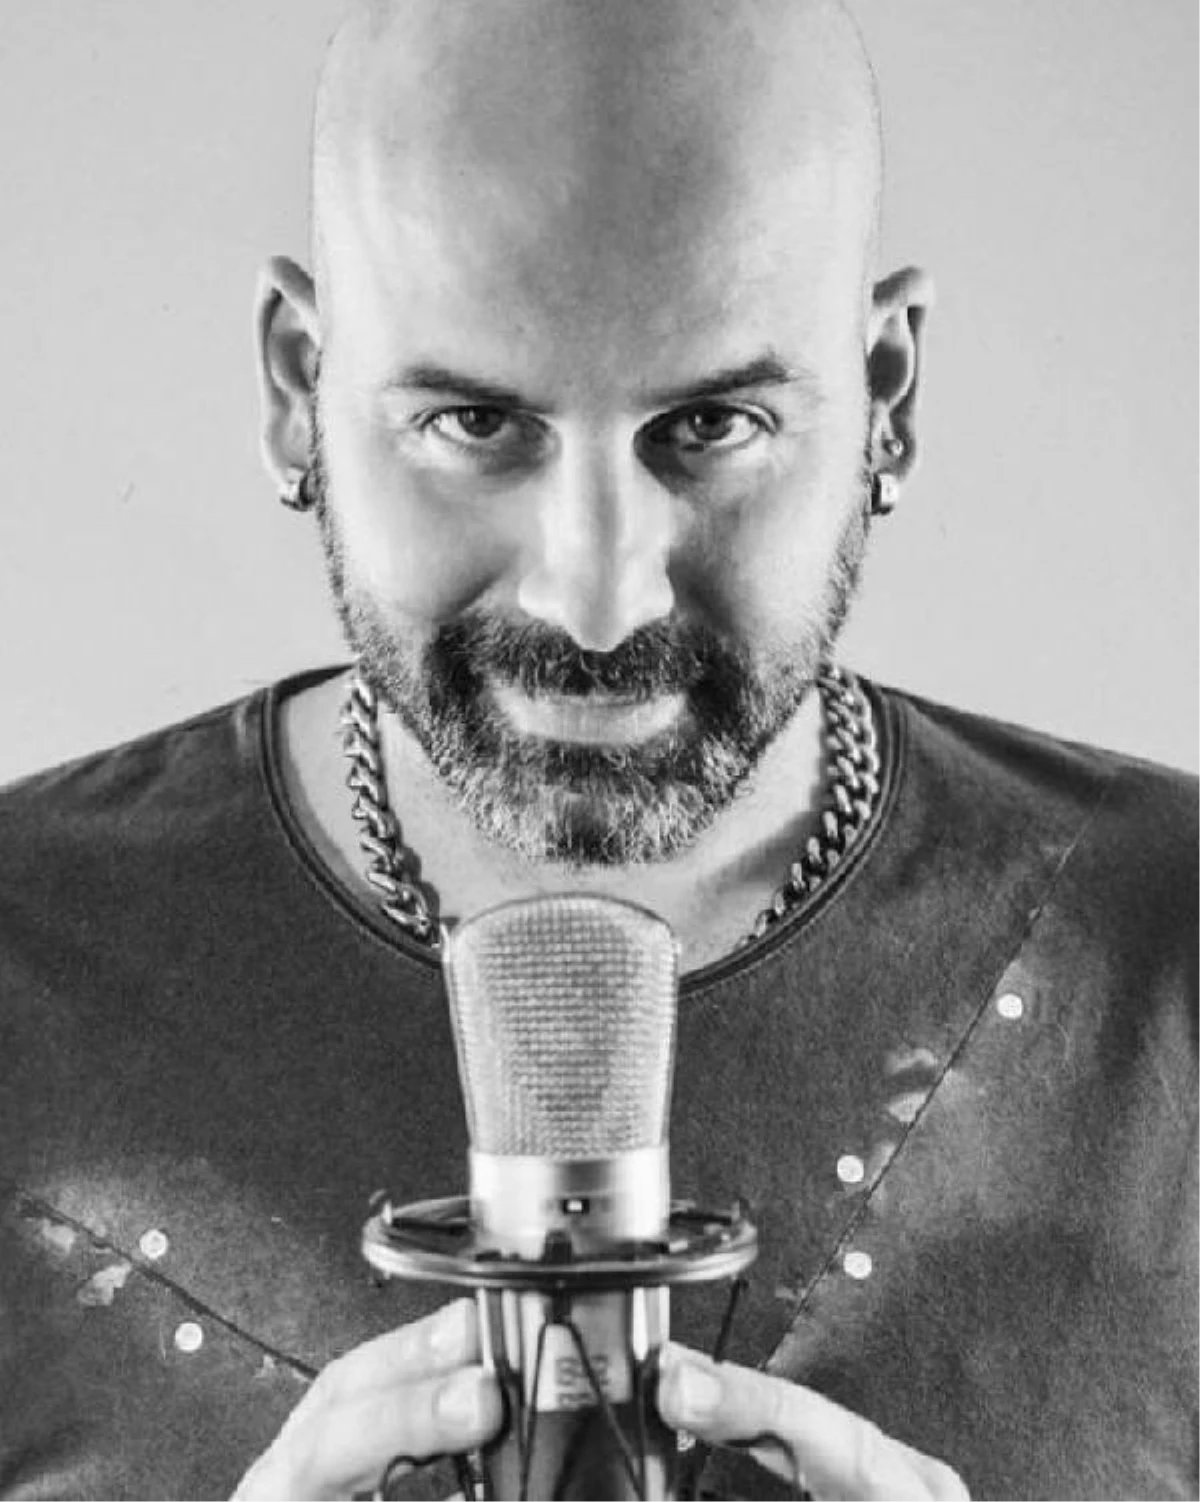 Müzisyen Onur Şener'in öldürülmesi davası devam ediyor